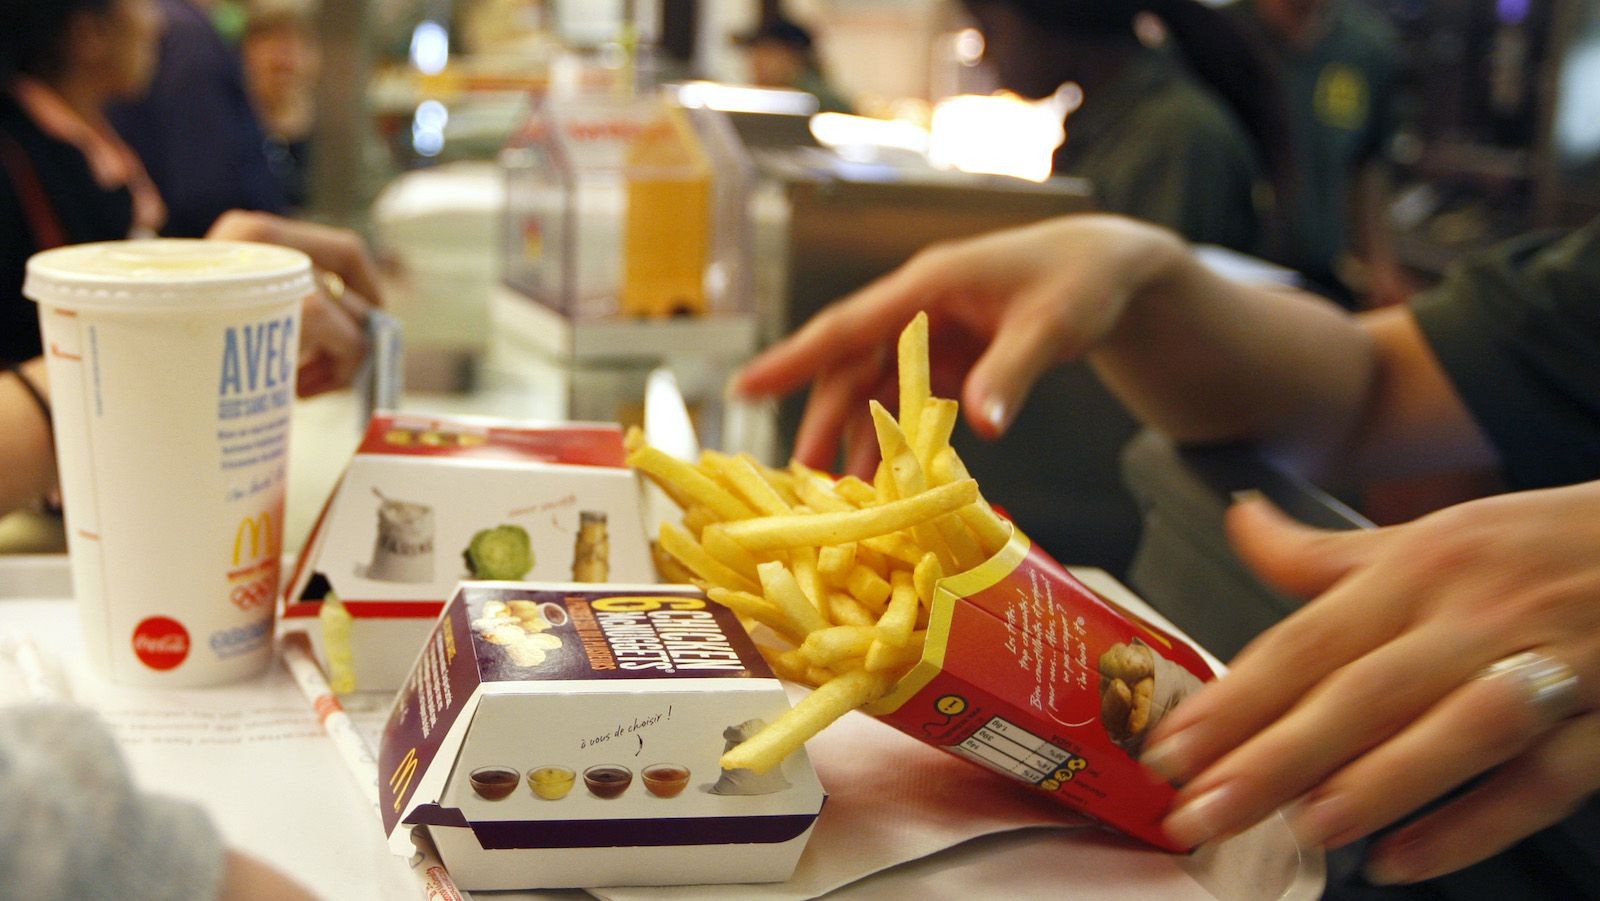 Troppi grassi e calorie: il corpo reagisce al fast food come a un'infezione